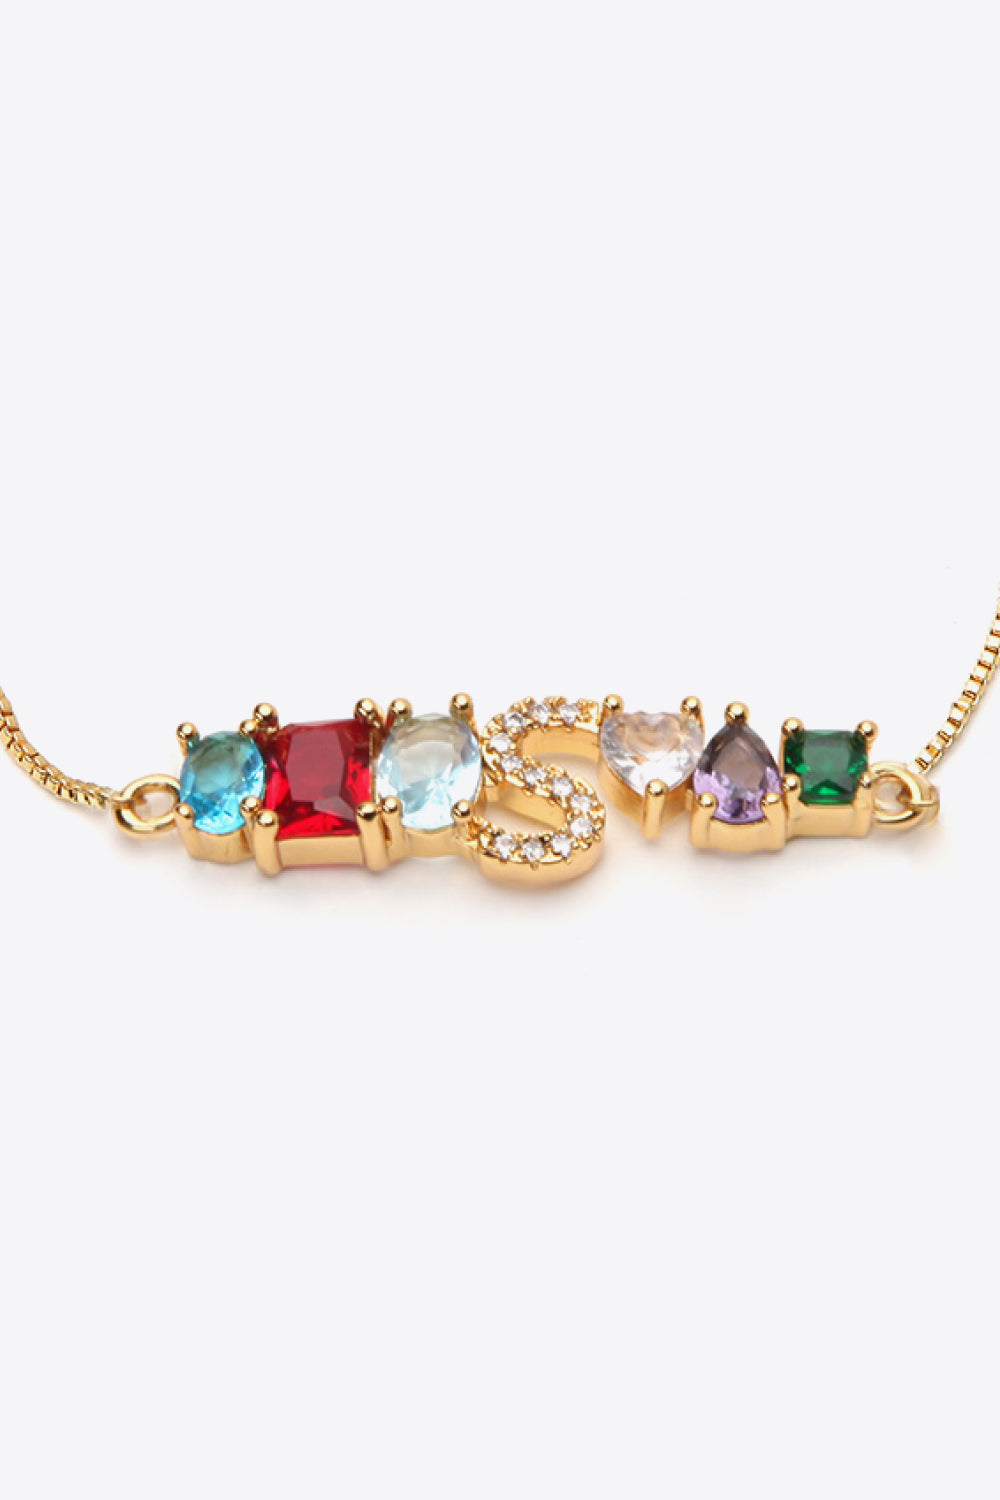 K to T Zircon Bracelet - Women’s Jewelry - Bracelets - 27 - 2024